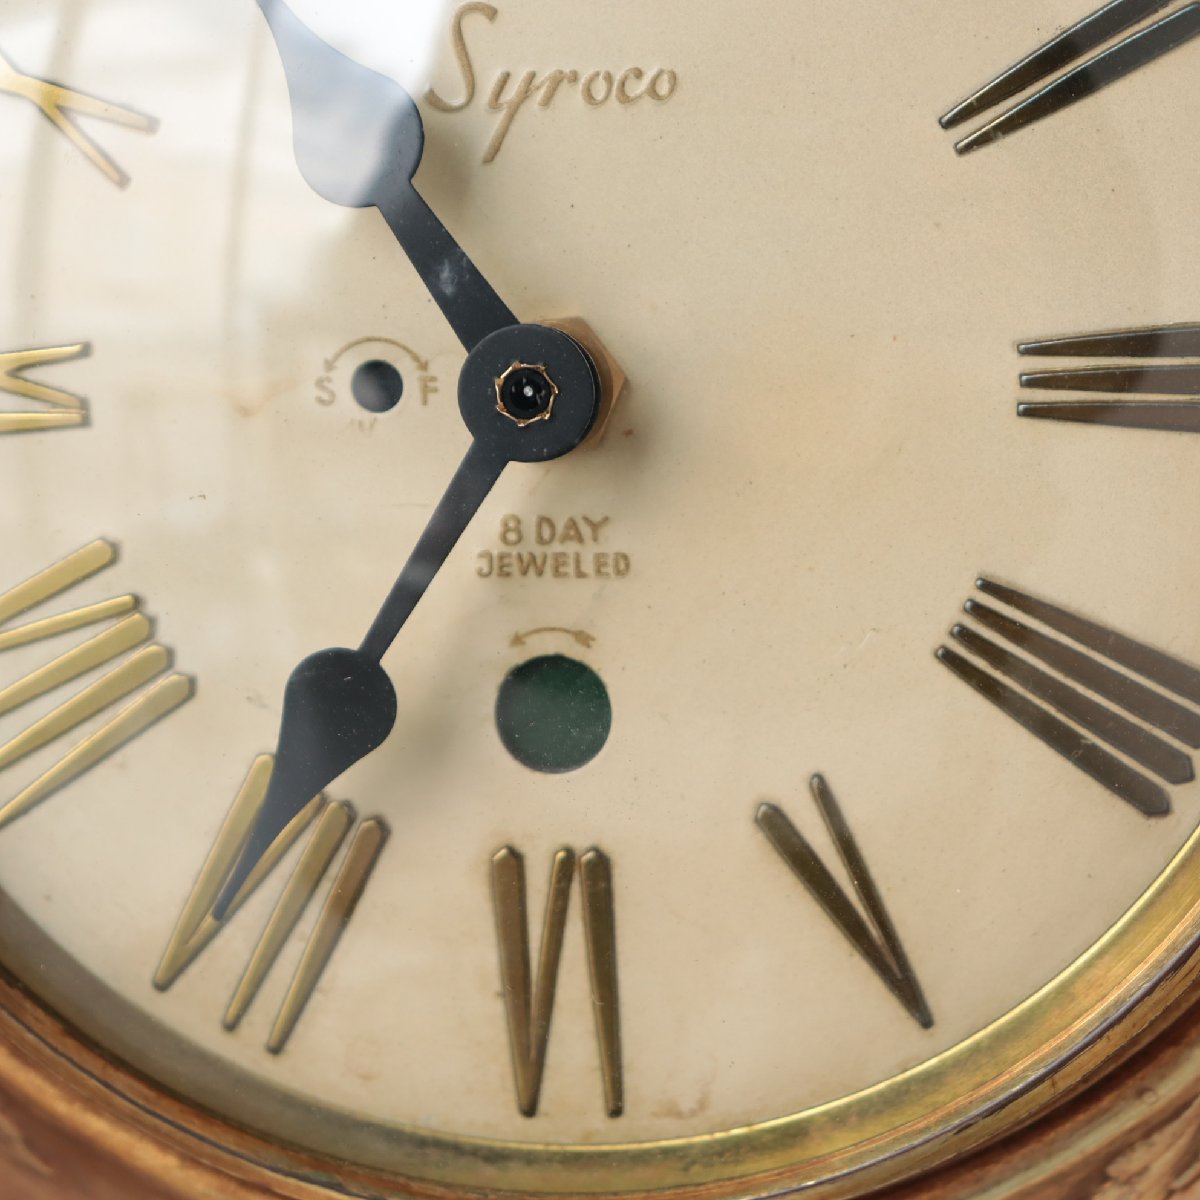 【美品】60's Syroco サンバーストクロックミッドセンチュリー壁掛け時計1960年代